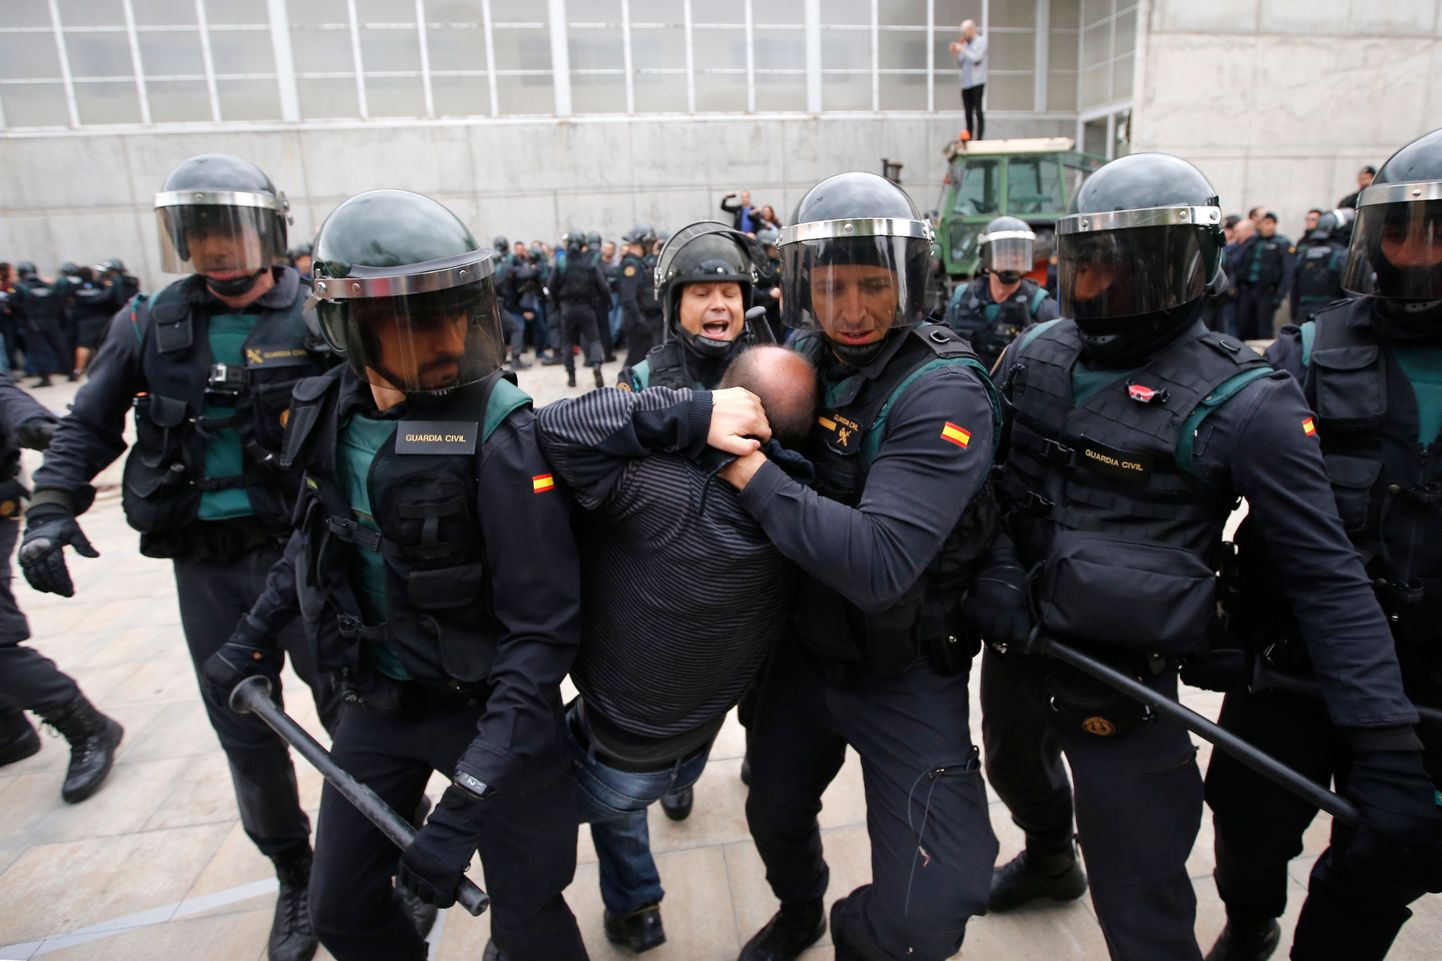 Hispaania tsiviilkaart aktsioonis. Foto on illustratiivne.